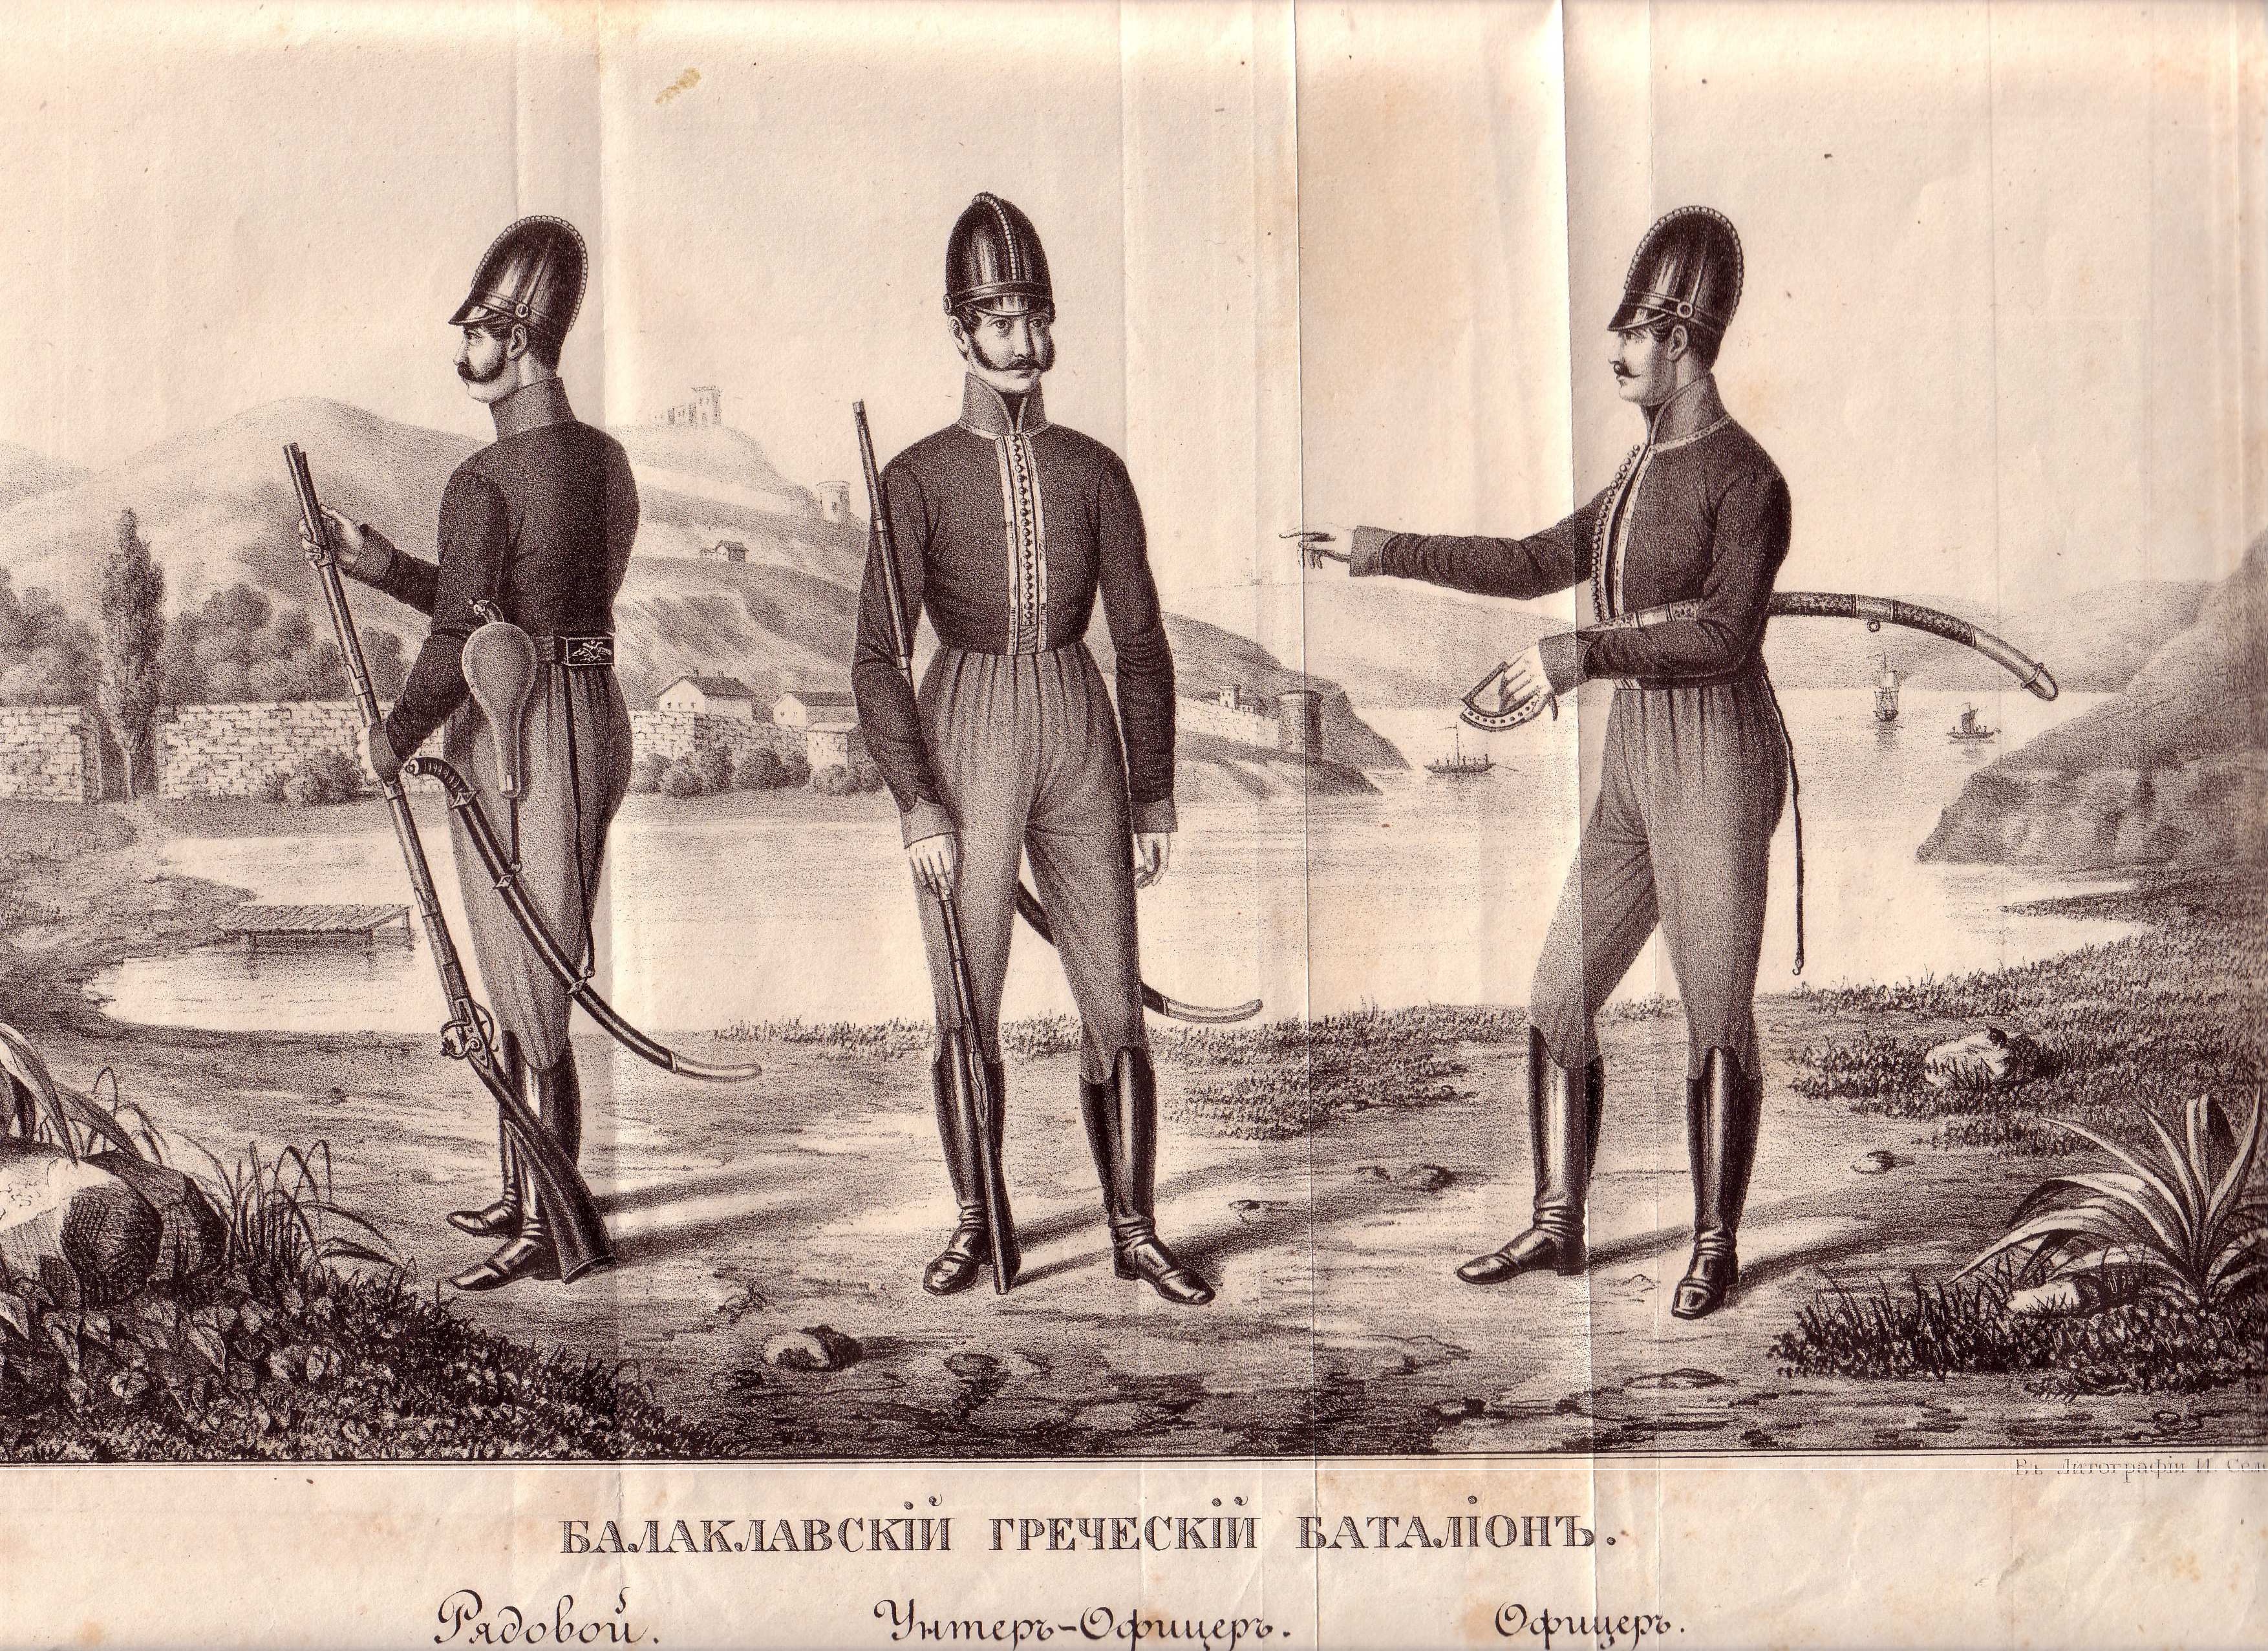 Χαρακτηριστικές στολές Αξιωματικού, Υπαξιωματικού και στρατιώτη του Ελληνικού Τάγματος της Μπαλακλάβα.